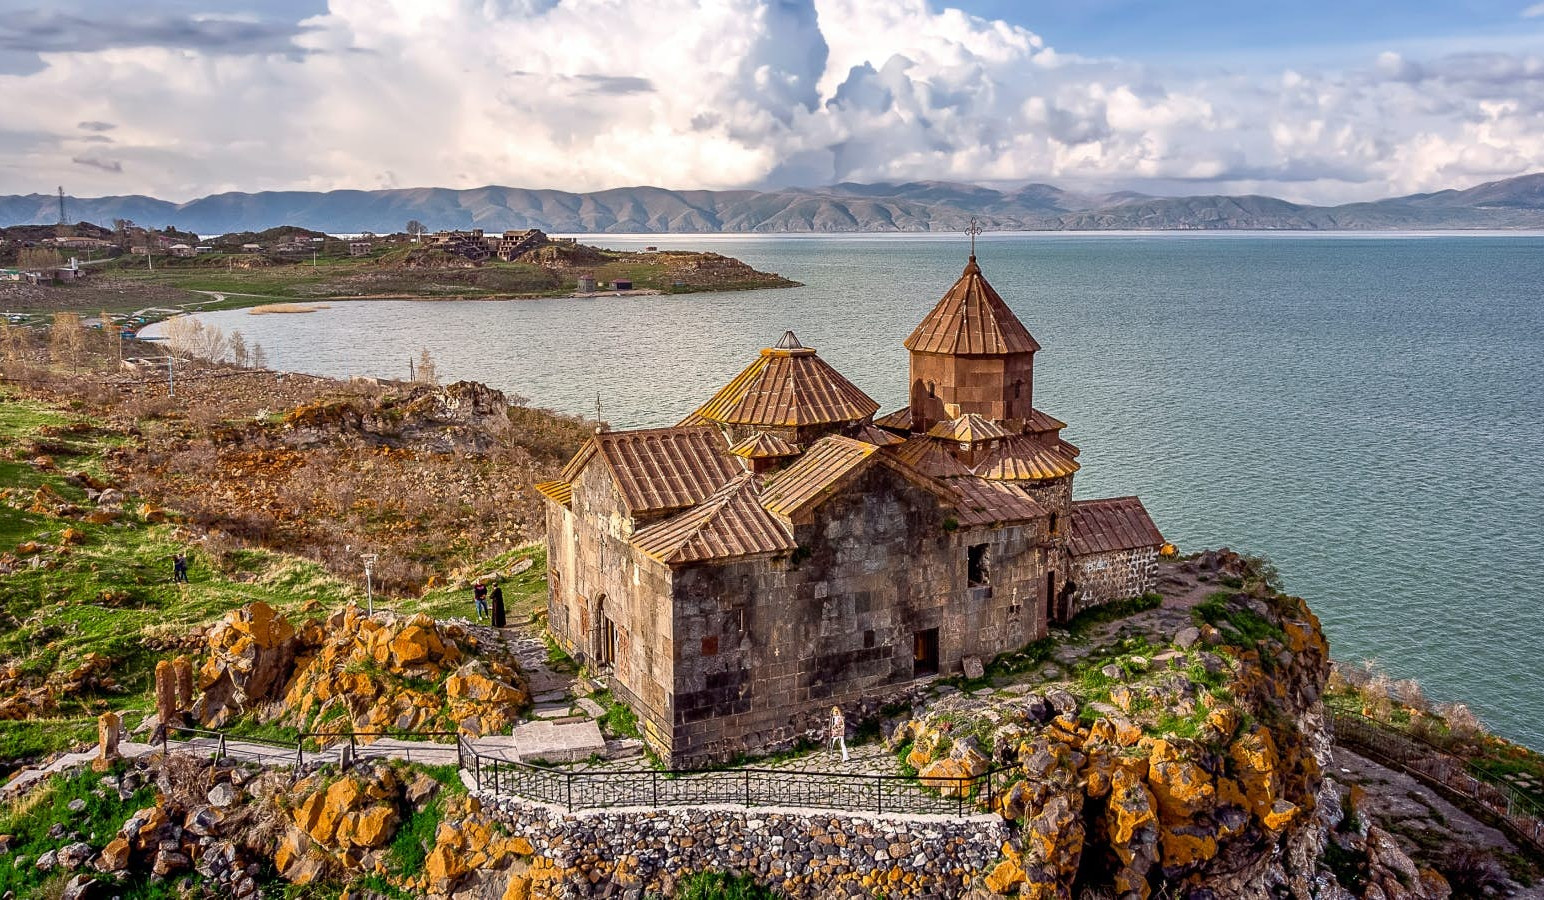 Երկիր, որը երաշխավորում է գրավել յուրաքանչյուր այցելուի սիրտ. Հայաստանը՝ հեղինակավոր Lonely Planet պարբերականի ուշադրության կենտրոնում